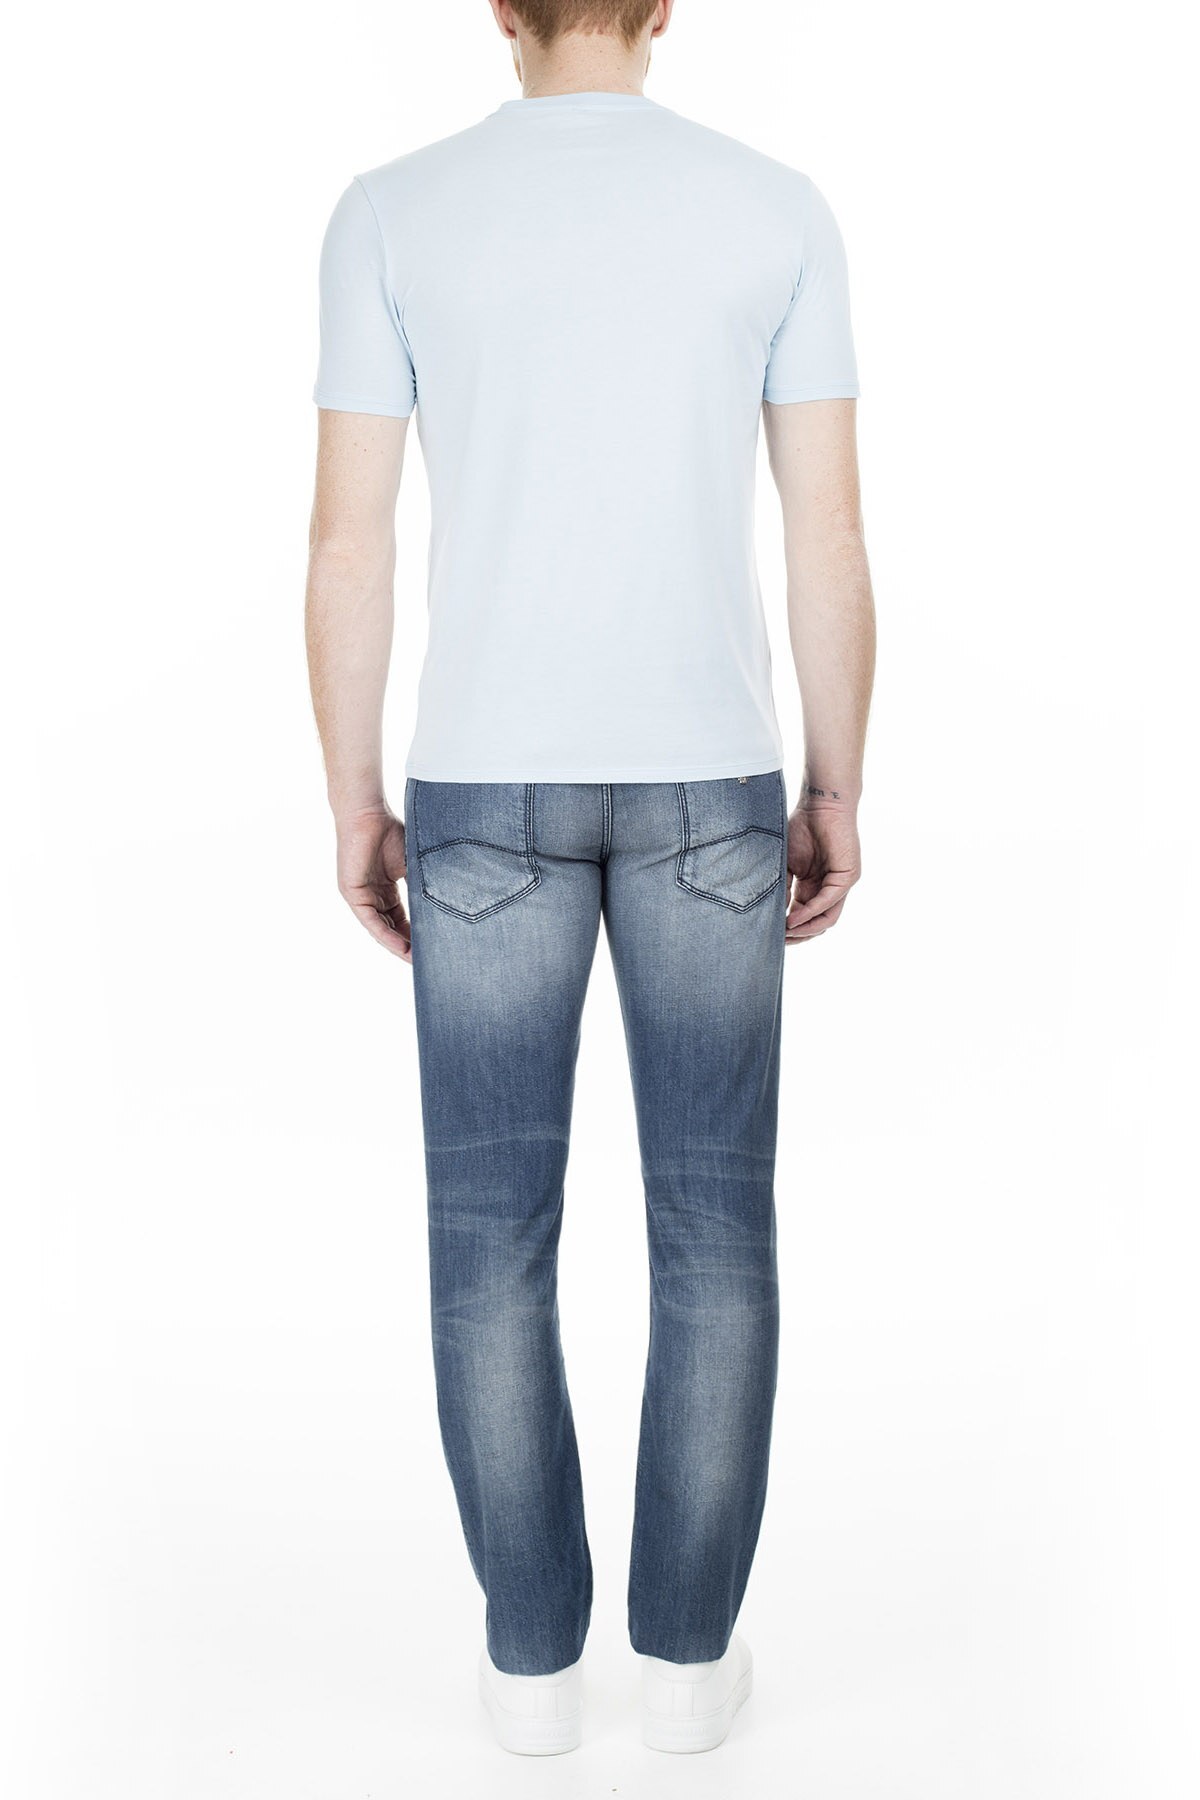 Armani J06 Jeans Erkek Kot Pantolon 3Y6J06 6D1YZ 1500 LACİVERT